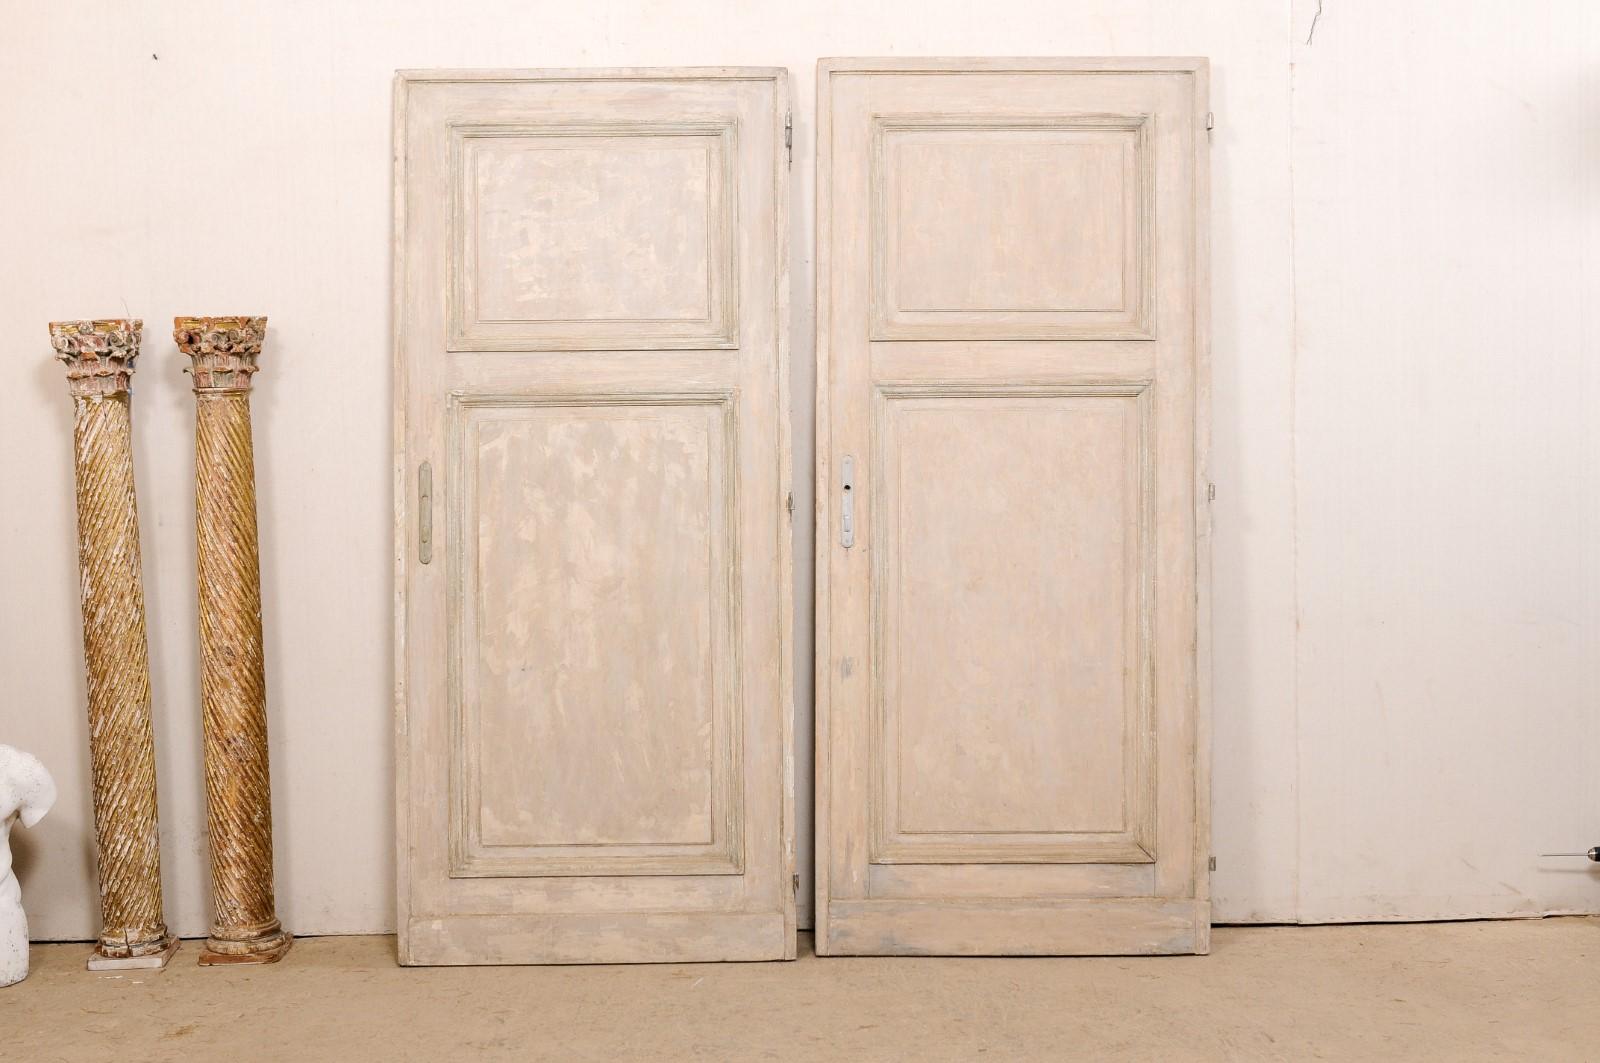 Ein französischer Satz von zwei Türen, beide einzeln, aus dem 19. Jahrhundert. Diese antiken Türen aus Frankreich sollen zwar nicht zusammenpassen (wie bei einem Paar französischer Türen), sind aber zwei fast identische Einzeltüren. Jede Tür besteht